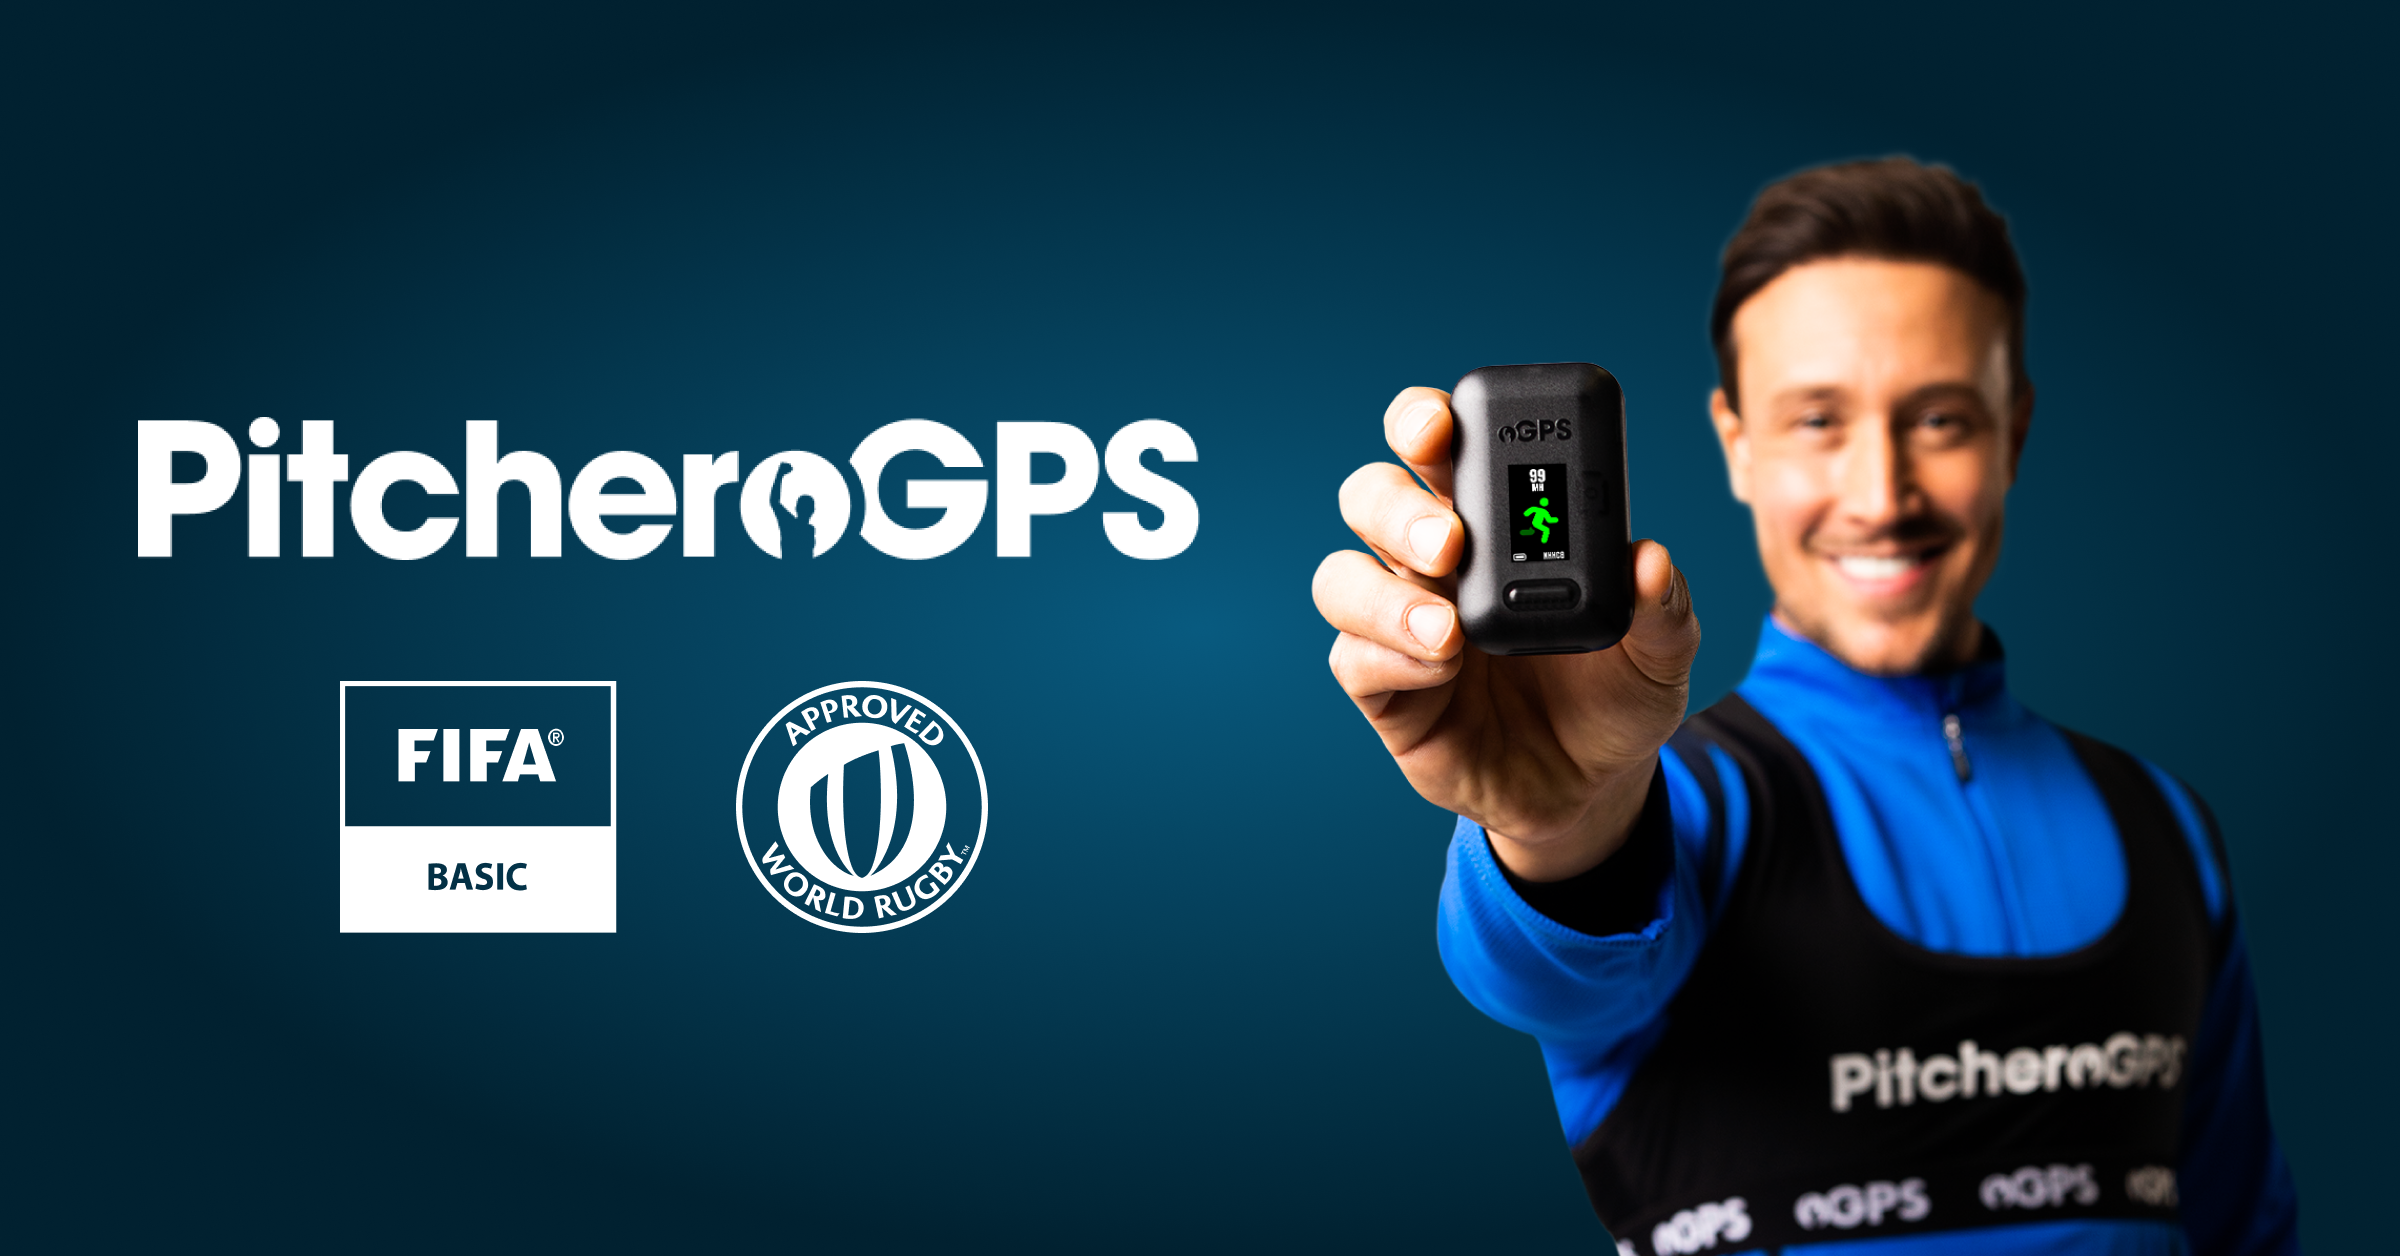 GPS Player Vest – PitcheroGPS